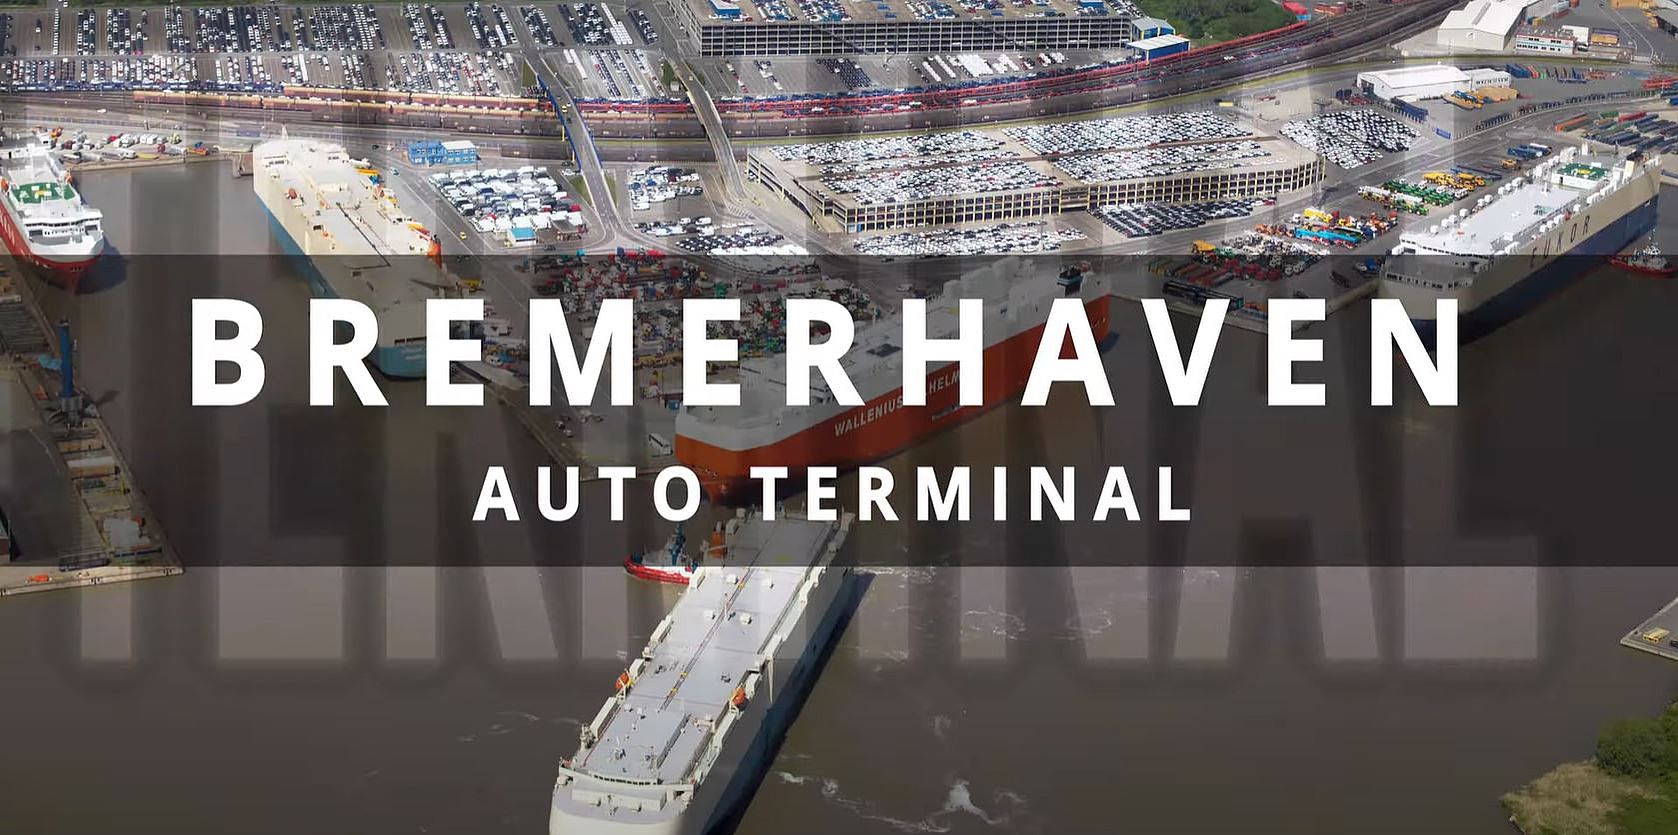 Ein Blick aus der Vogelperspektive auf das Autoterminal in Bremerhaven. Insert: Weiße Schrift auf dunklerem Grund Bremerhaven Auto Terminal